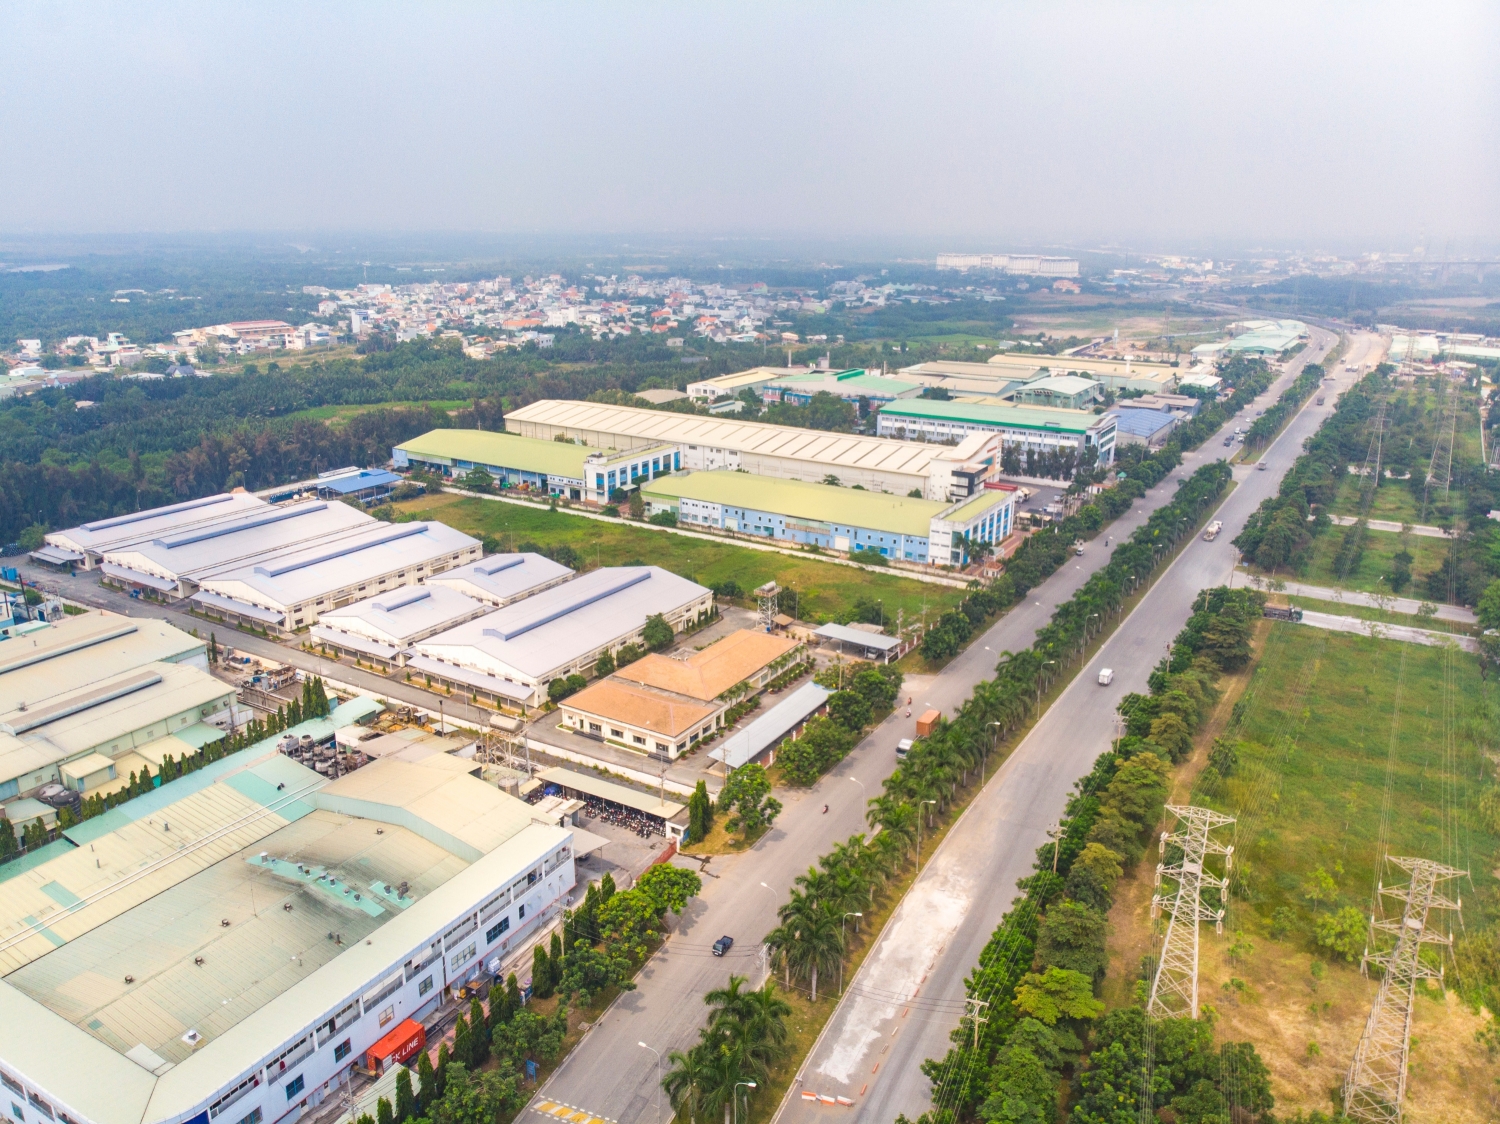 Tin bất động sản ngày 31/10: 21 dự án đầu tư sai mục tiêu tại Bắc Giang